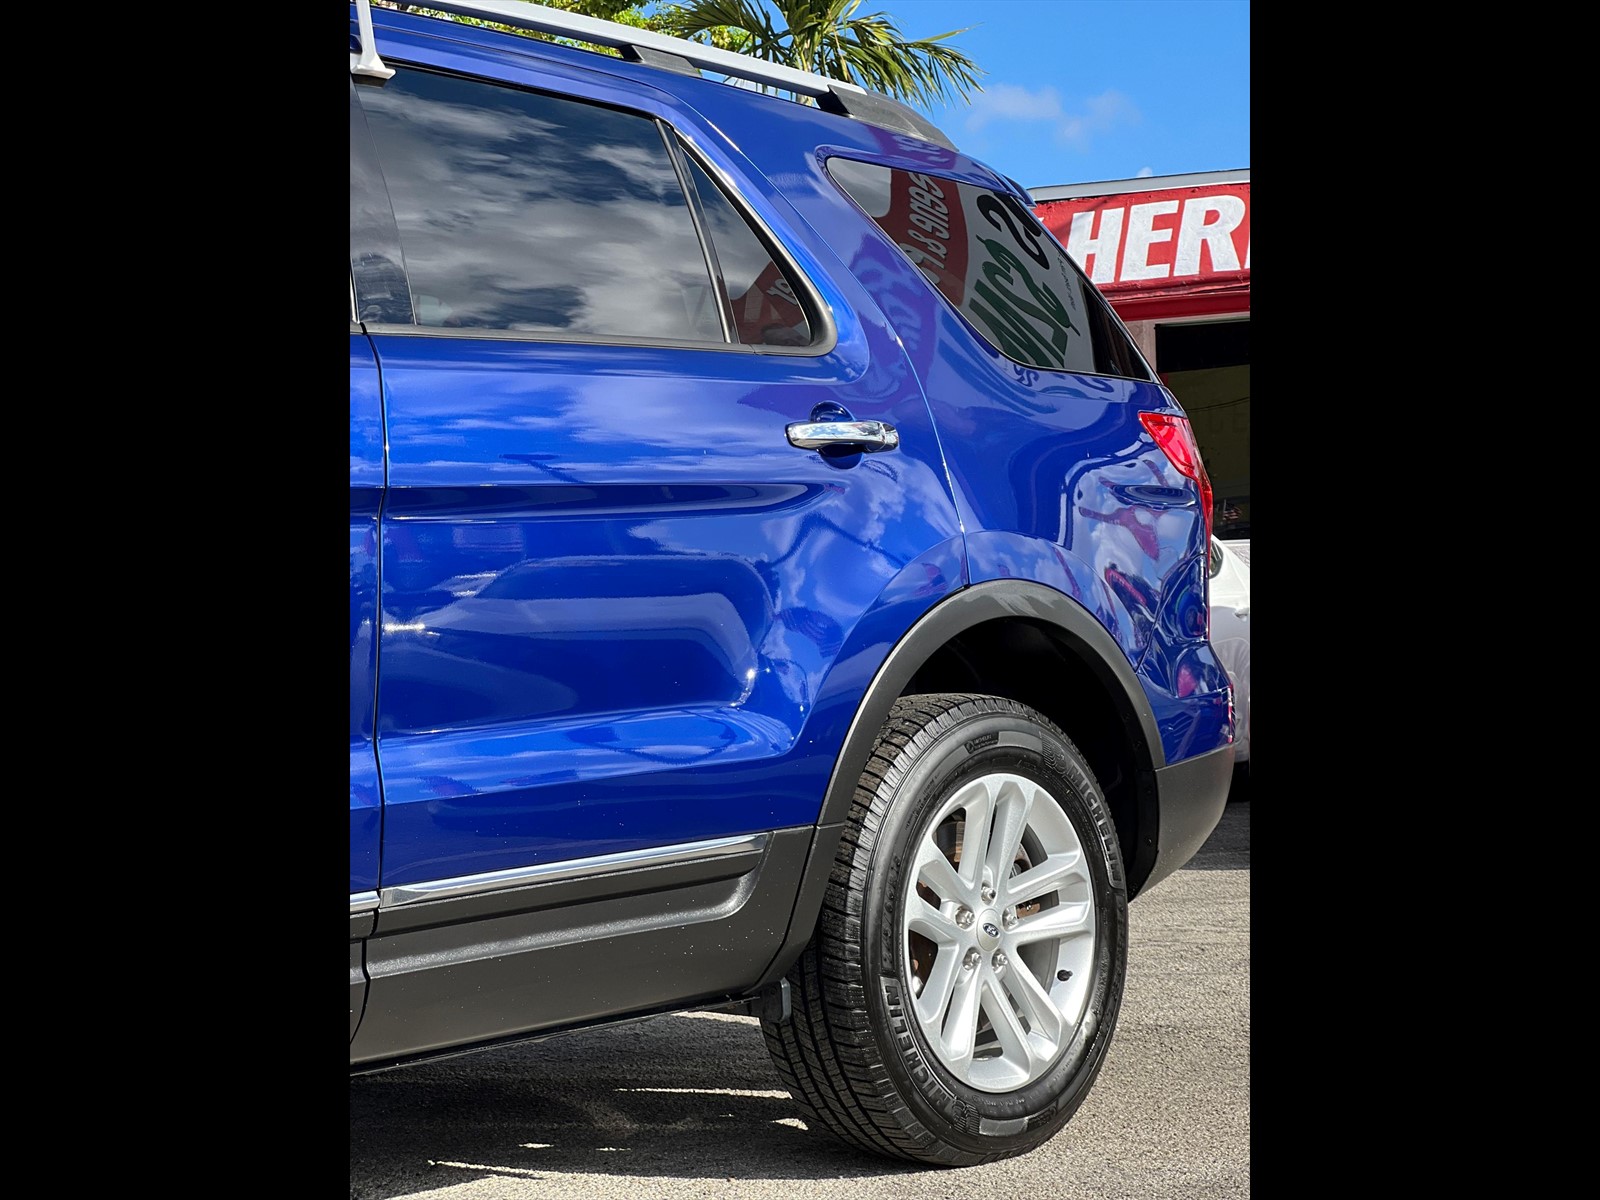 2015 Ford Explorer in miami, FL